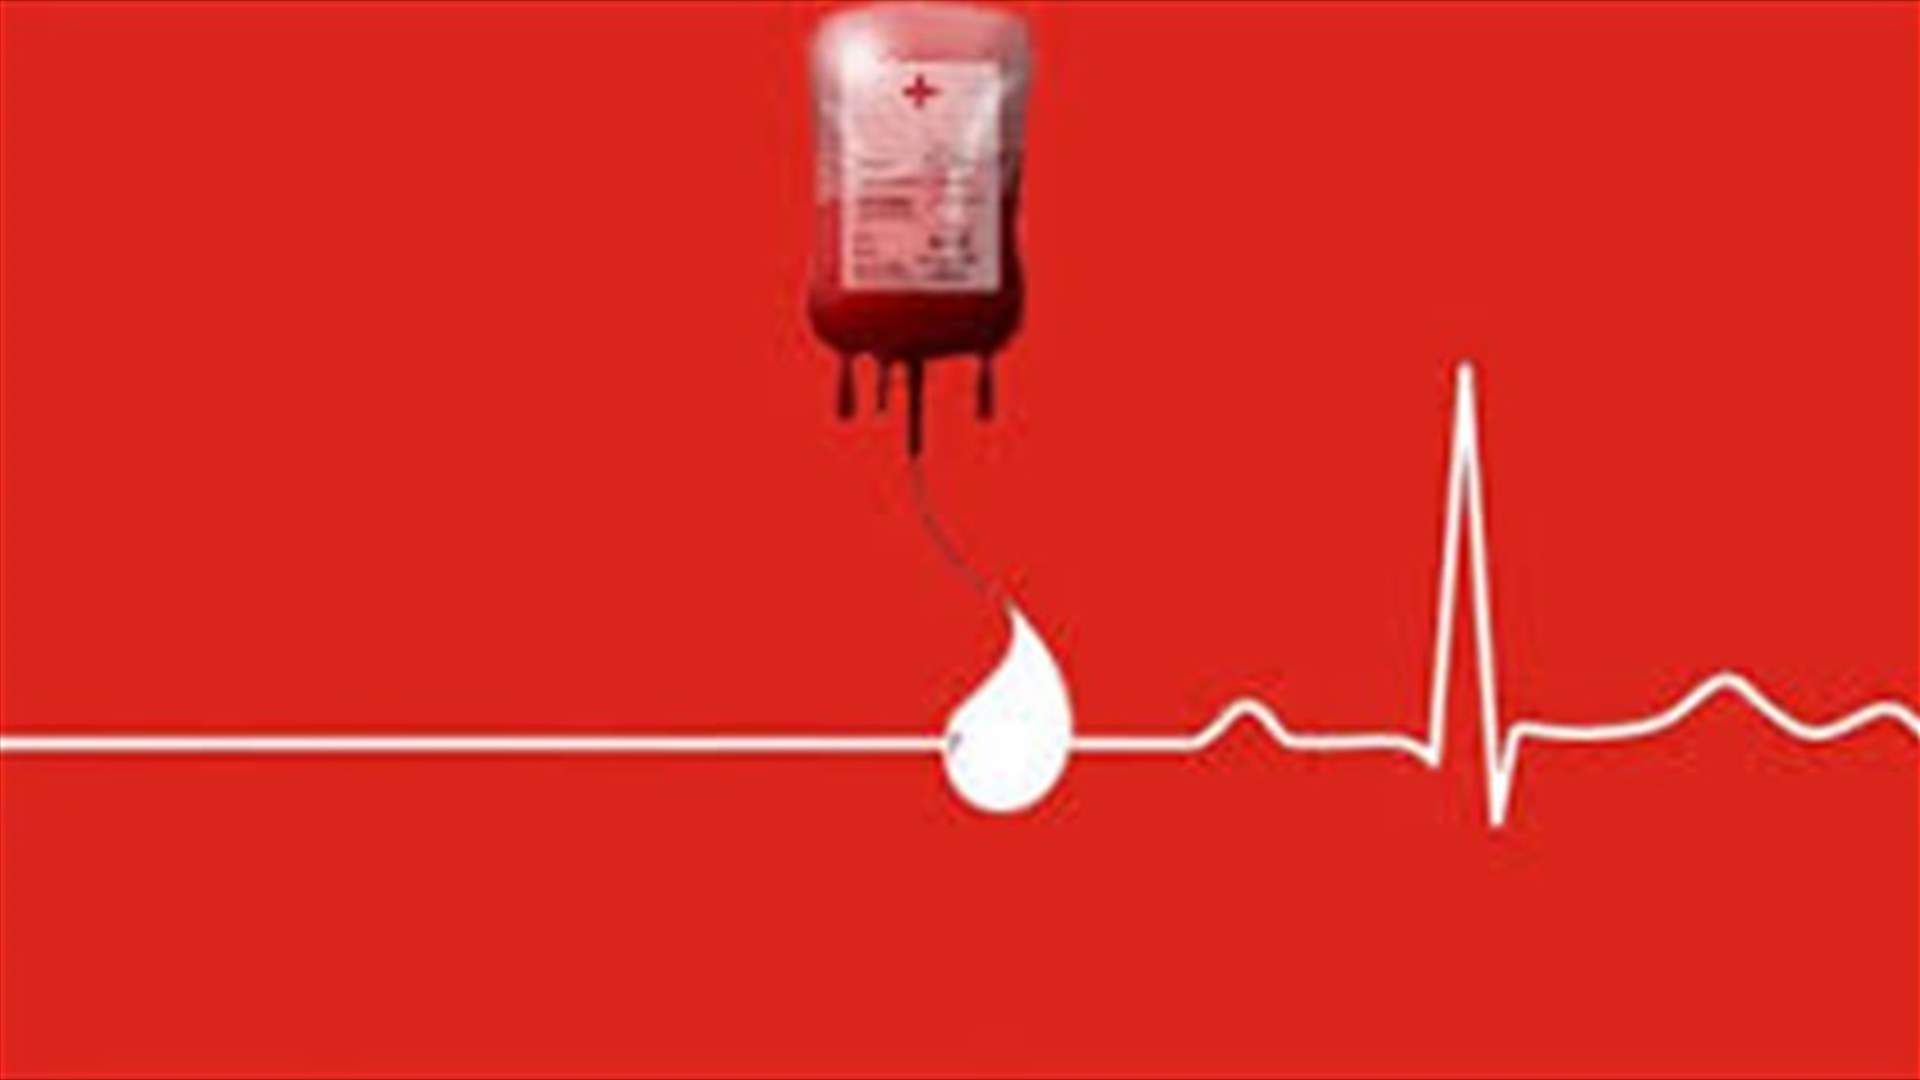 مريضة بحاجة ماسّة لـ5 وحدات دم من فئة O+ لاجراء عملية يوم الجمعة في مستشفى مار يوسف - الدورة للتبرع الرجاء الاتصال على 03442087 أو 03538670